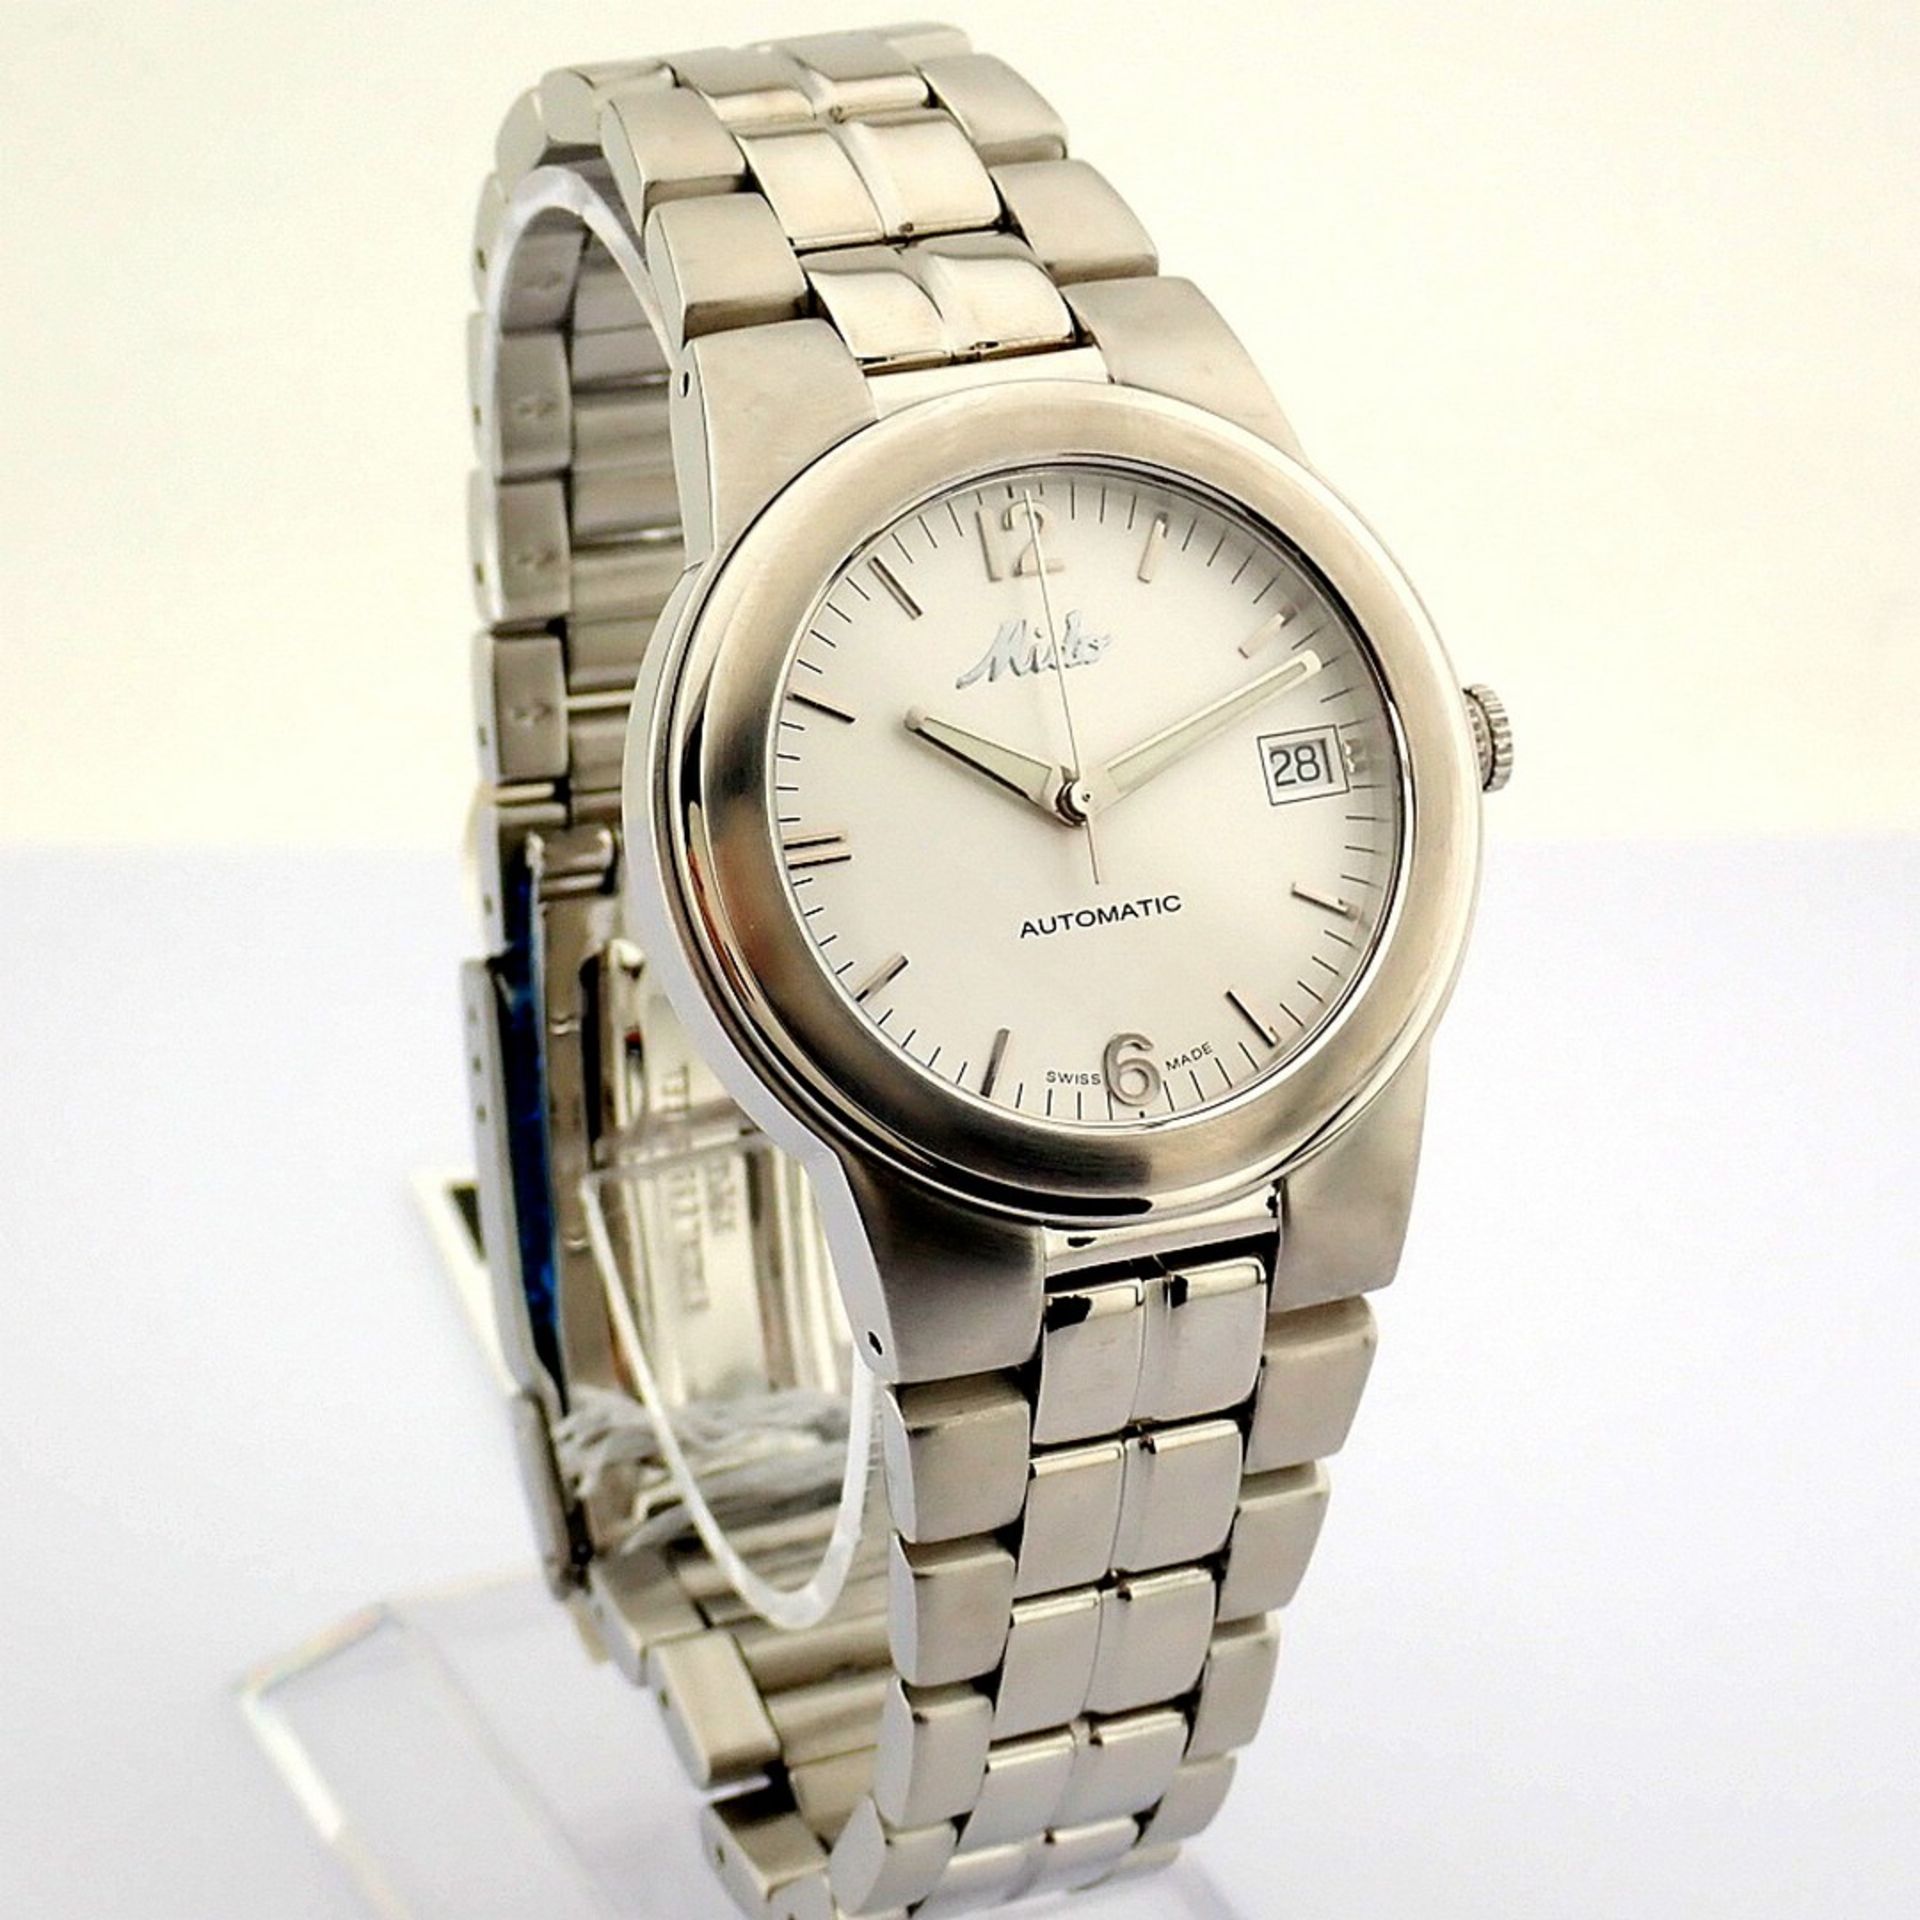 Mido / Ocean Star Aquadura (Brand New) - Gentlemen's Steel Wristwatch - Image 9 of 12